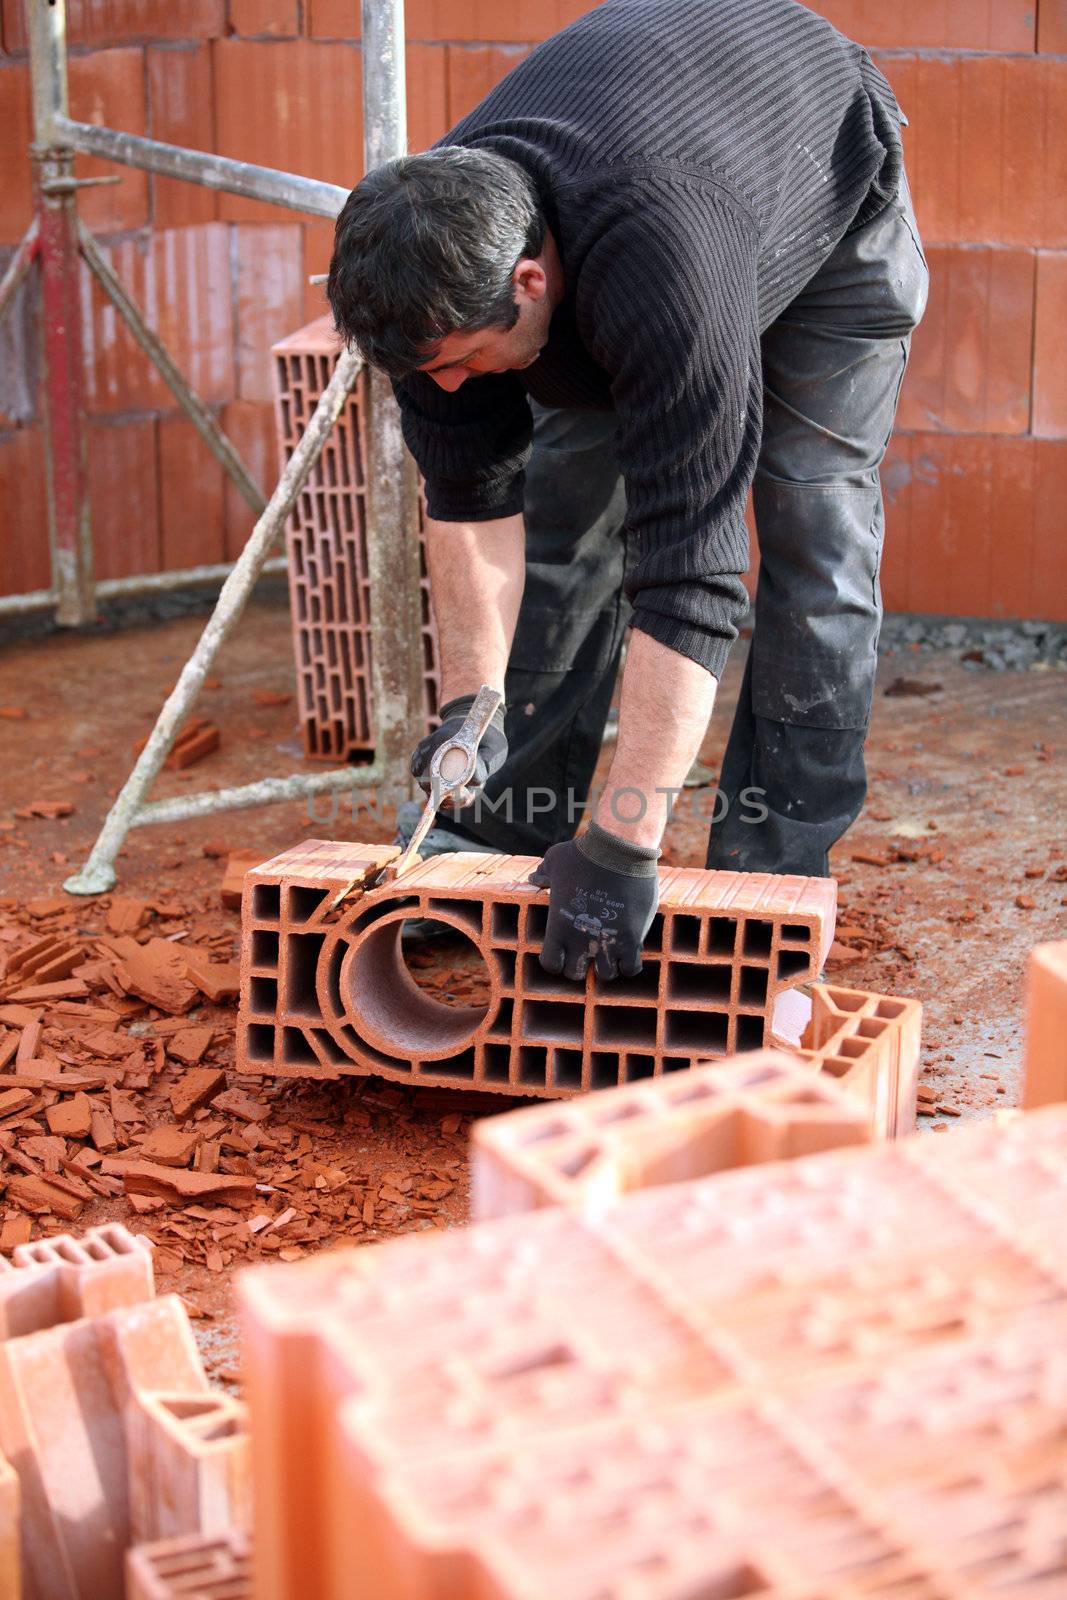 Workman sculpting a brick by phovoir